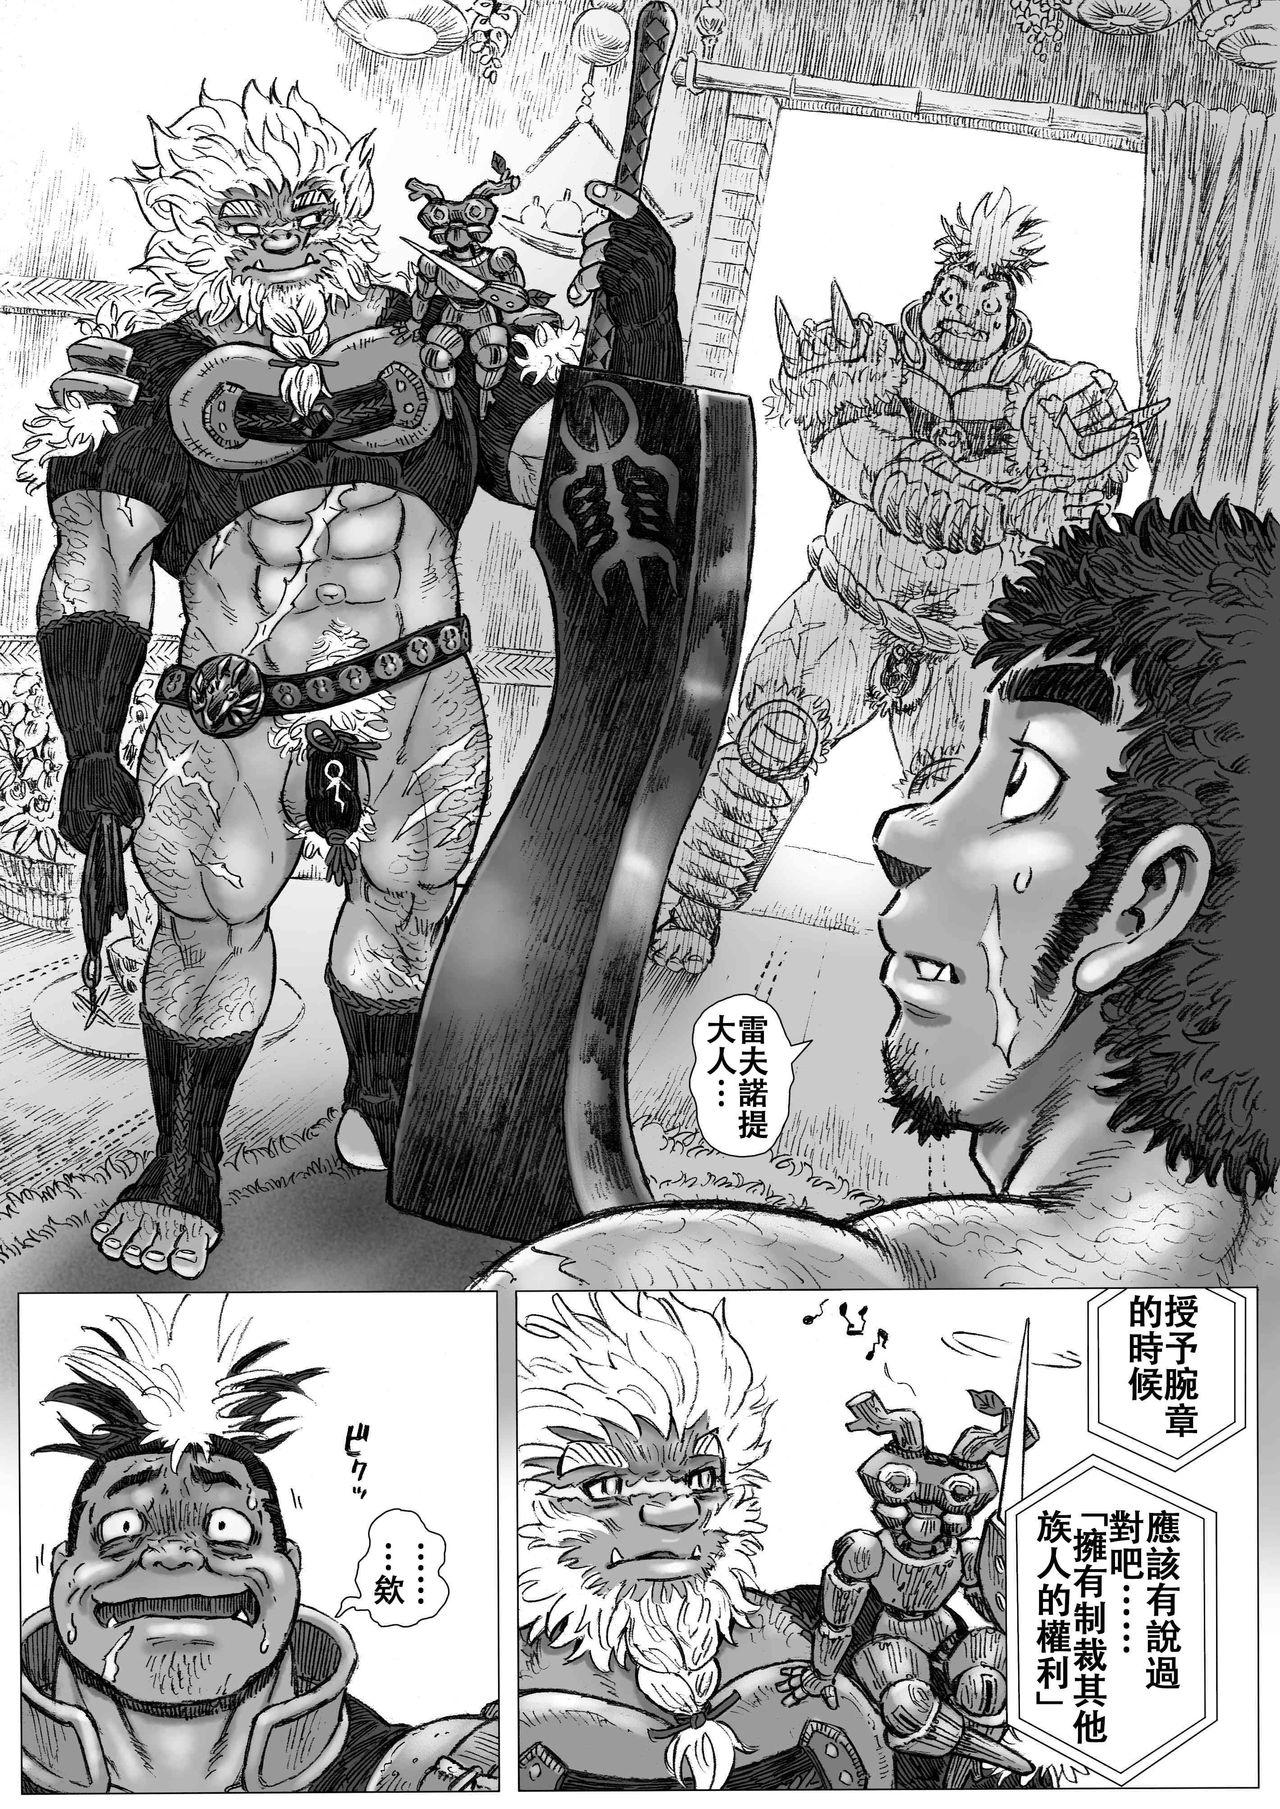 Jerk Off Hepoe no Kuni kara 16 - Original Fat - Page 6